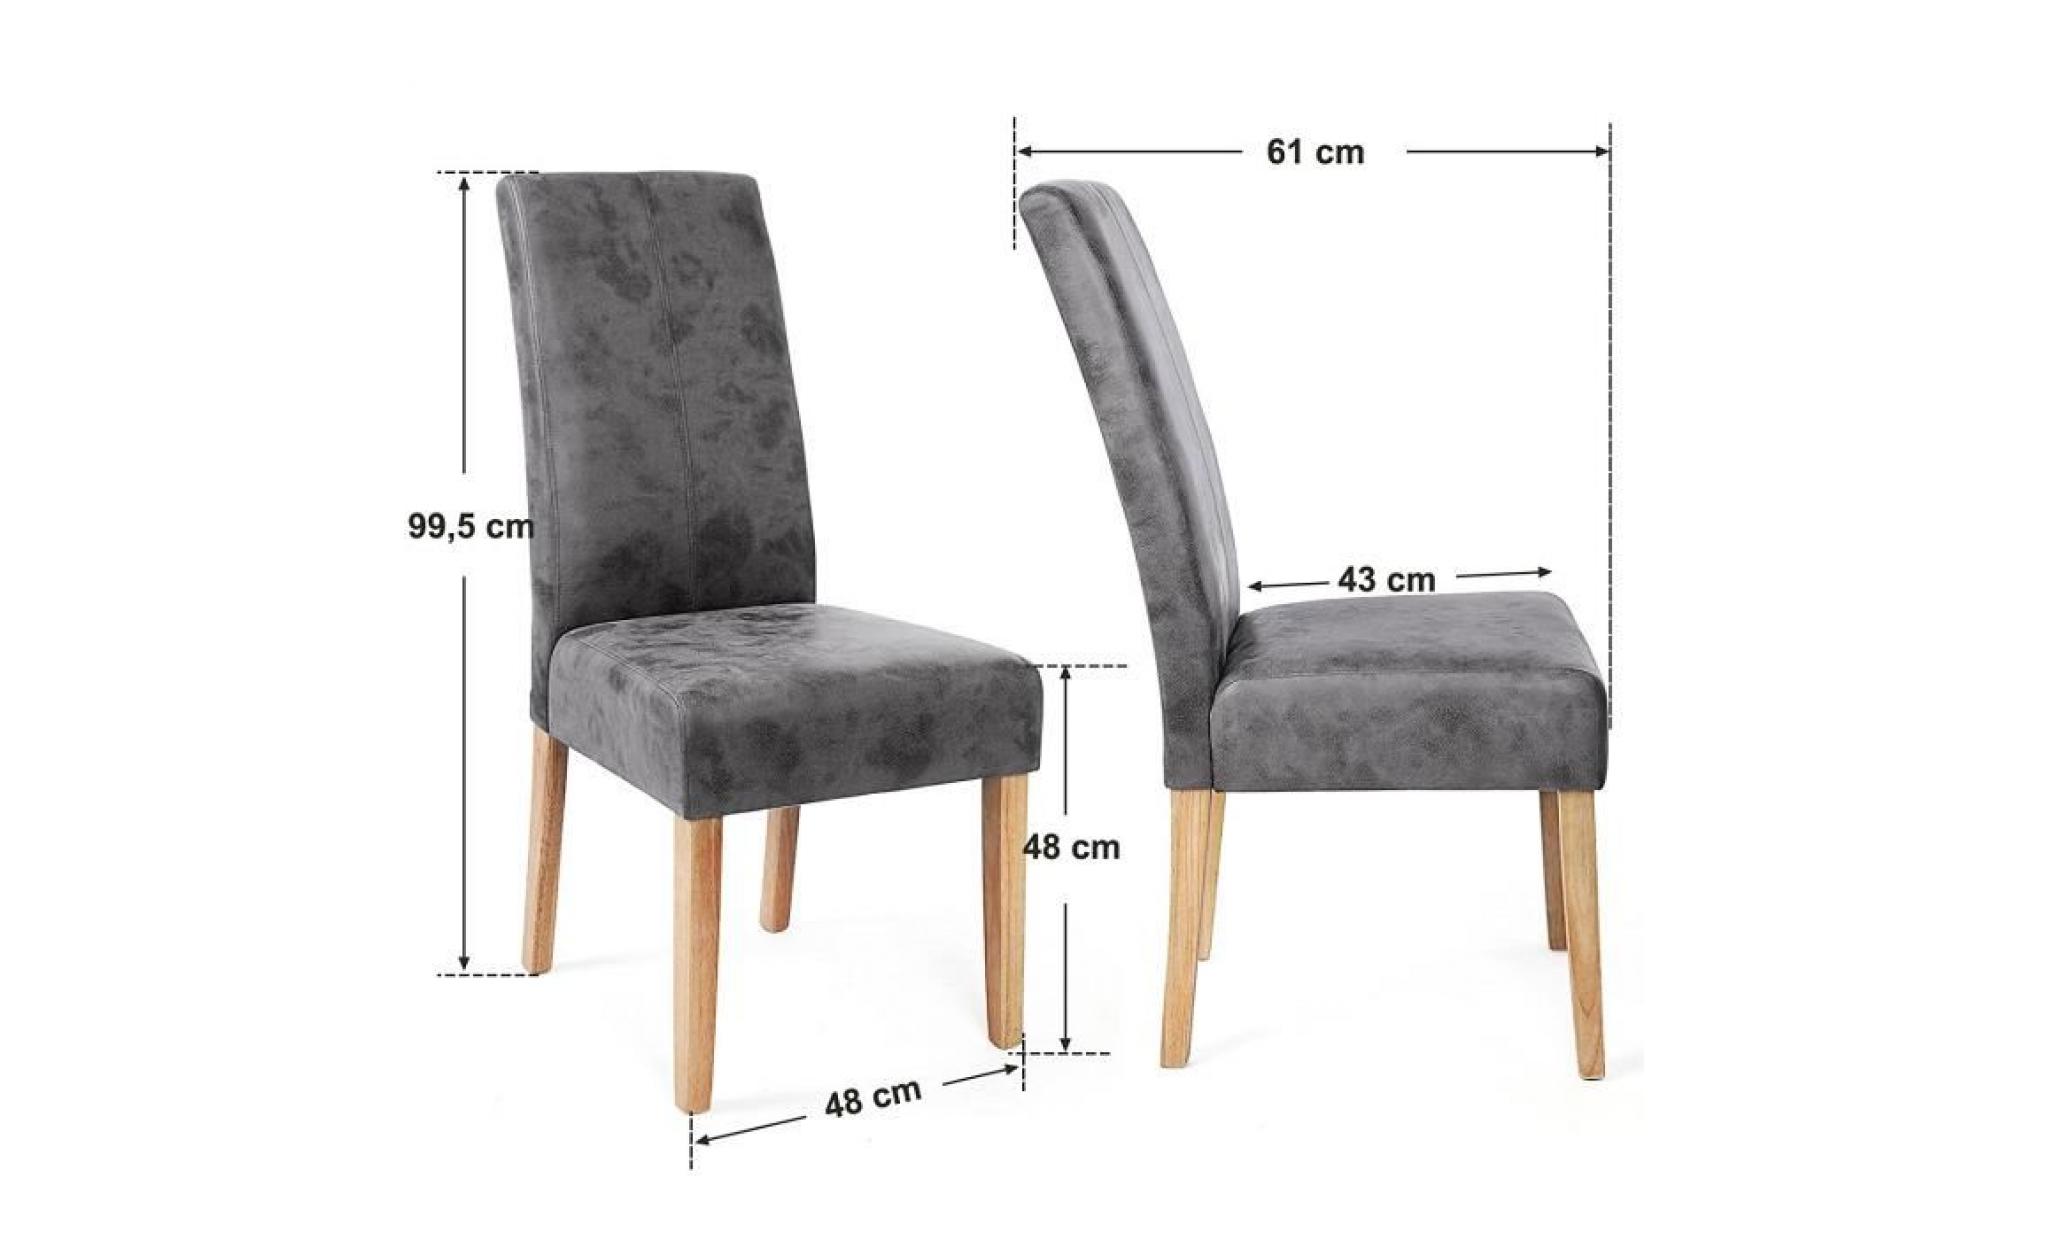 lot de 2 chaises de salle à manger pieds en pin massif revêtement en velours de suédé gris foncé 48 x 61 x 99,5 cm ldc41g songmics pas cher